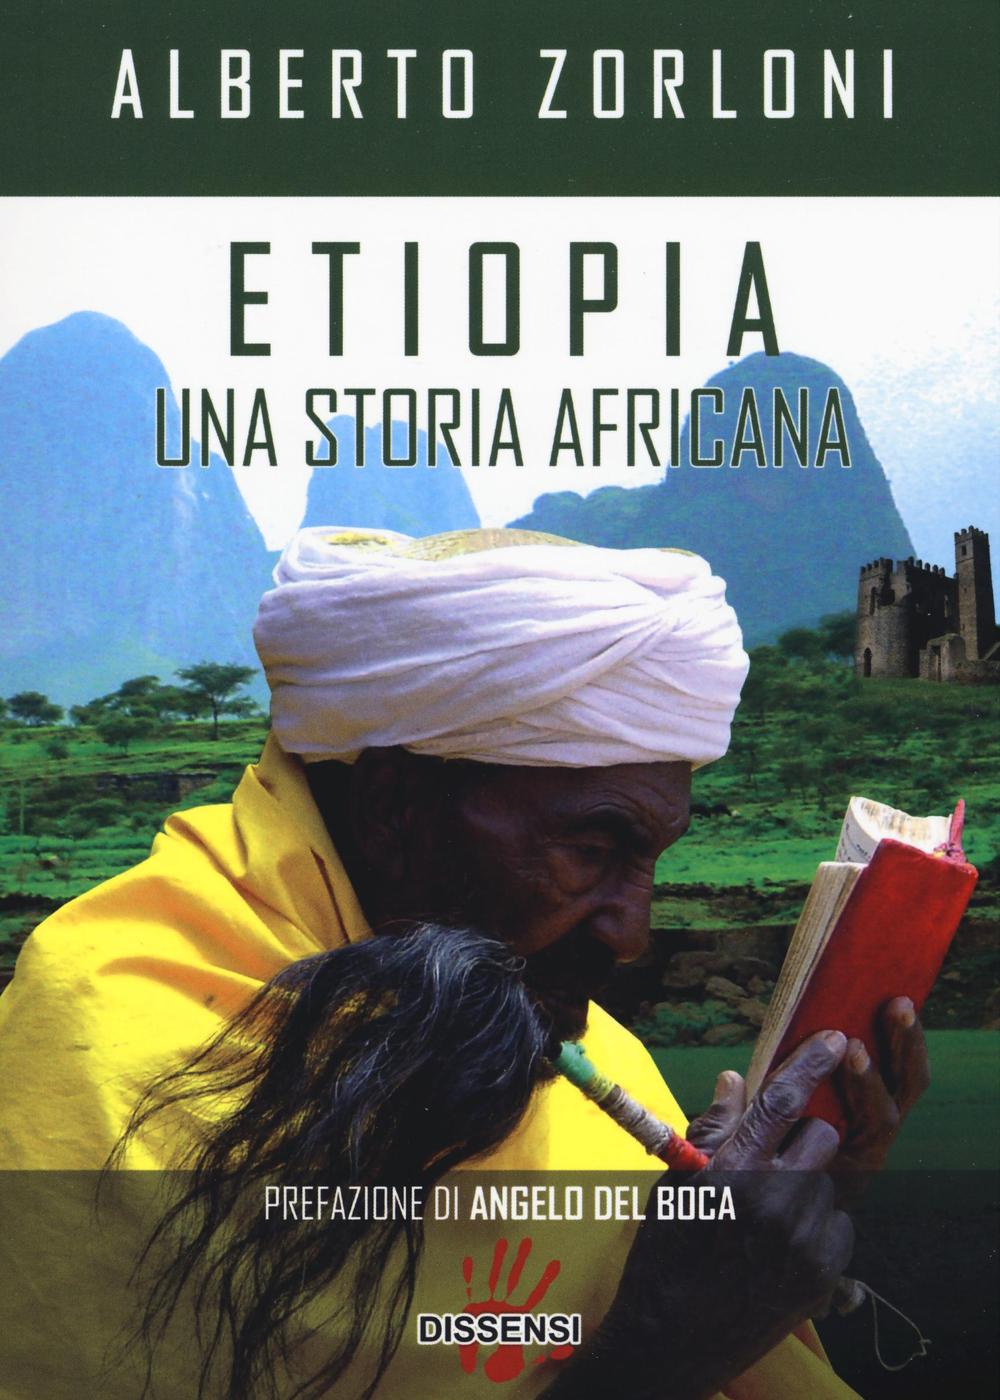 Etiopia, una storia africana